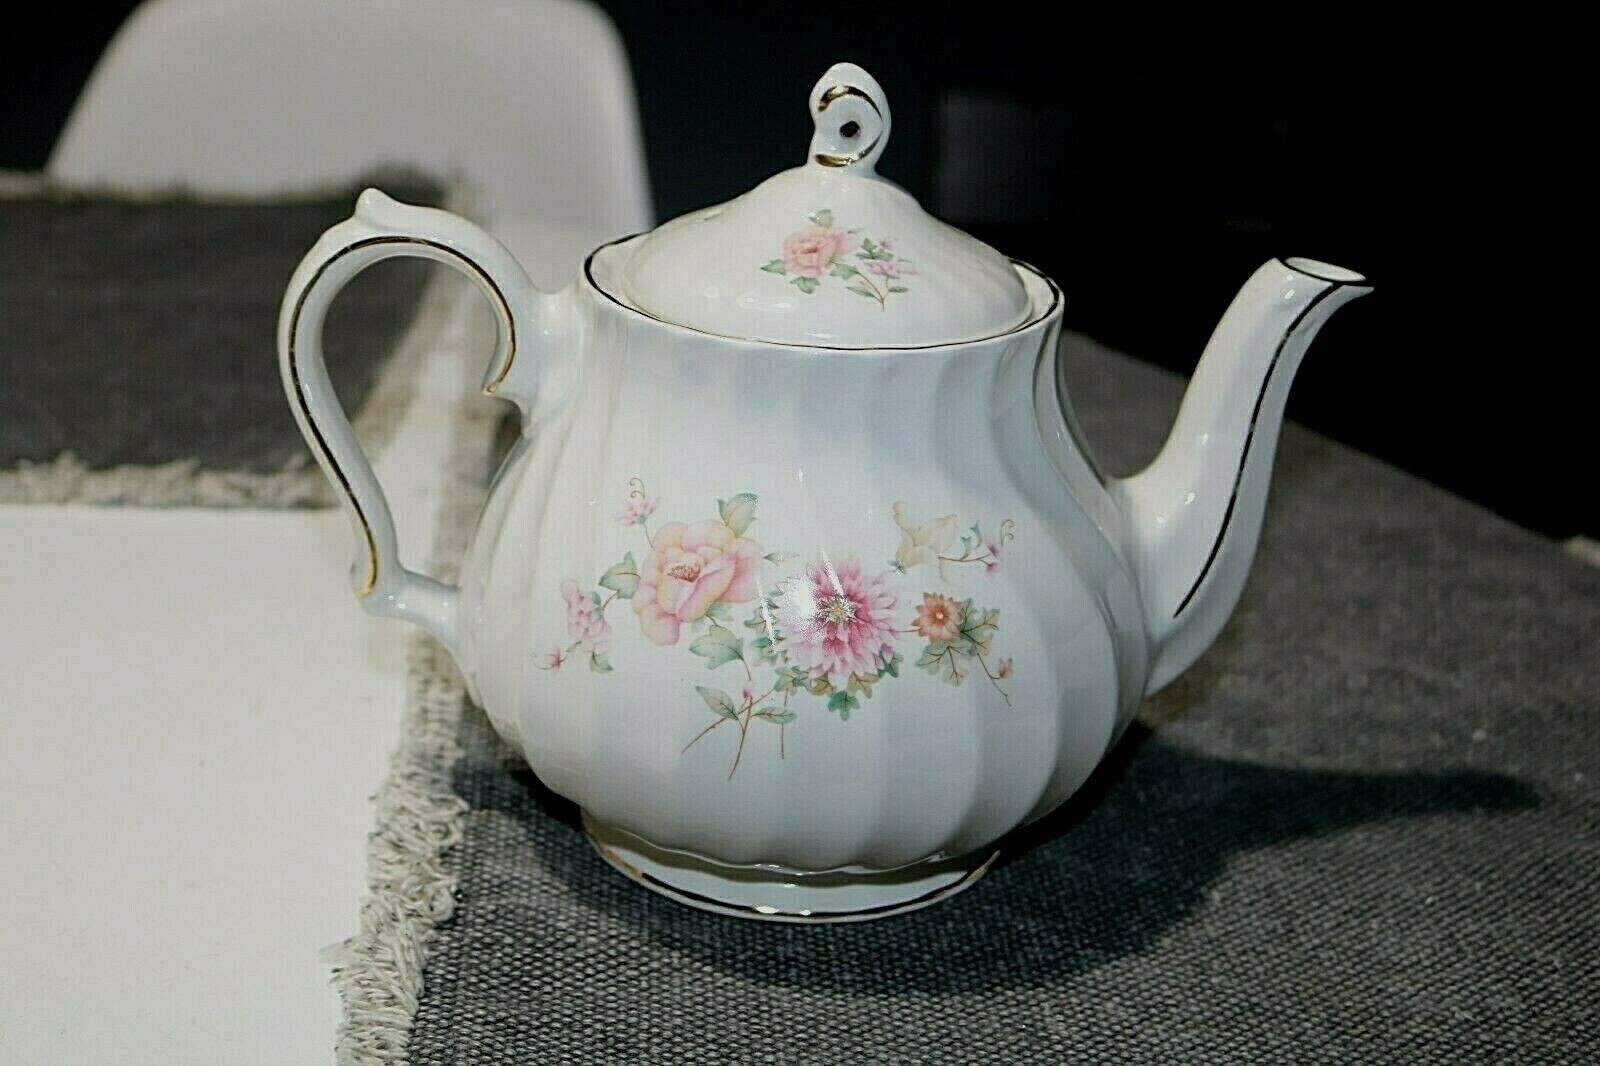 Vintage Sadler Teapot from England